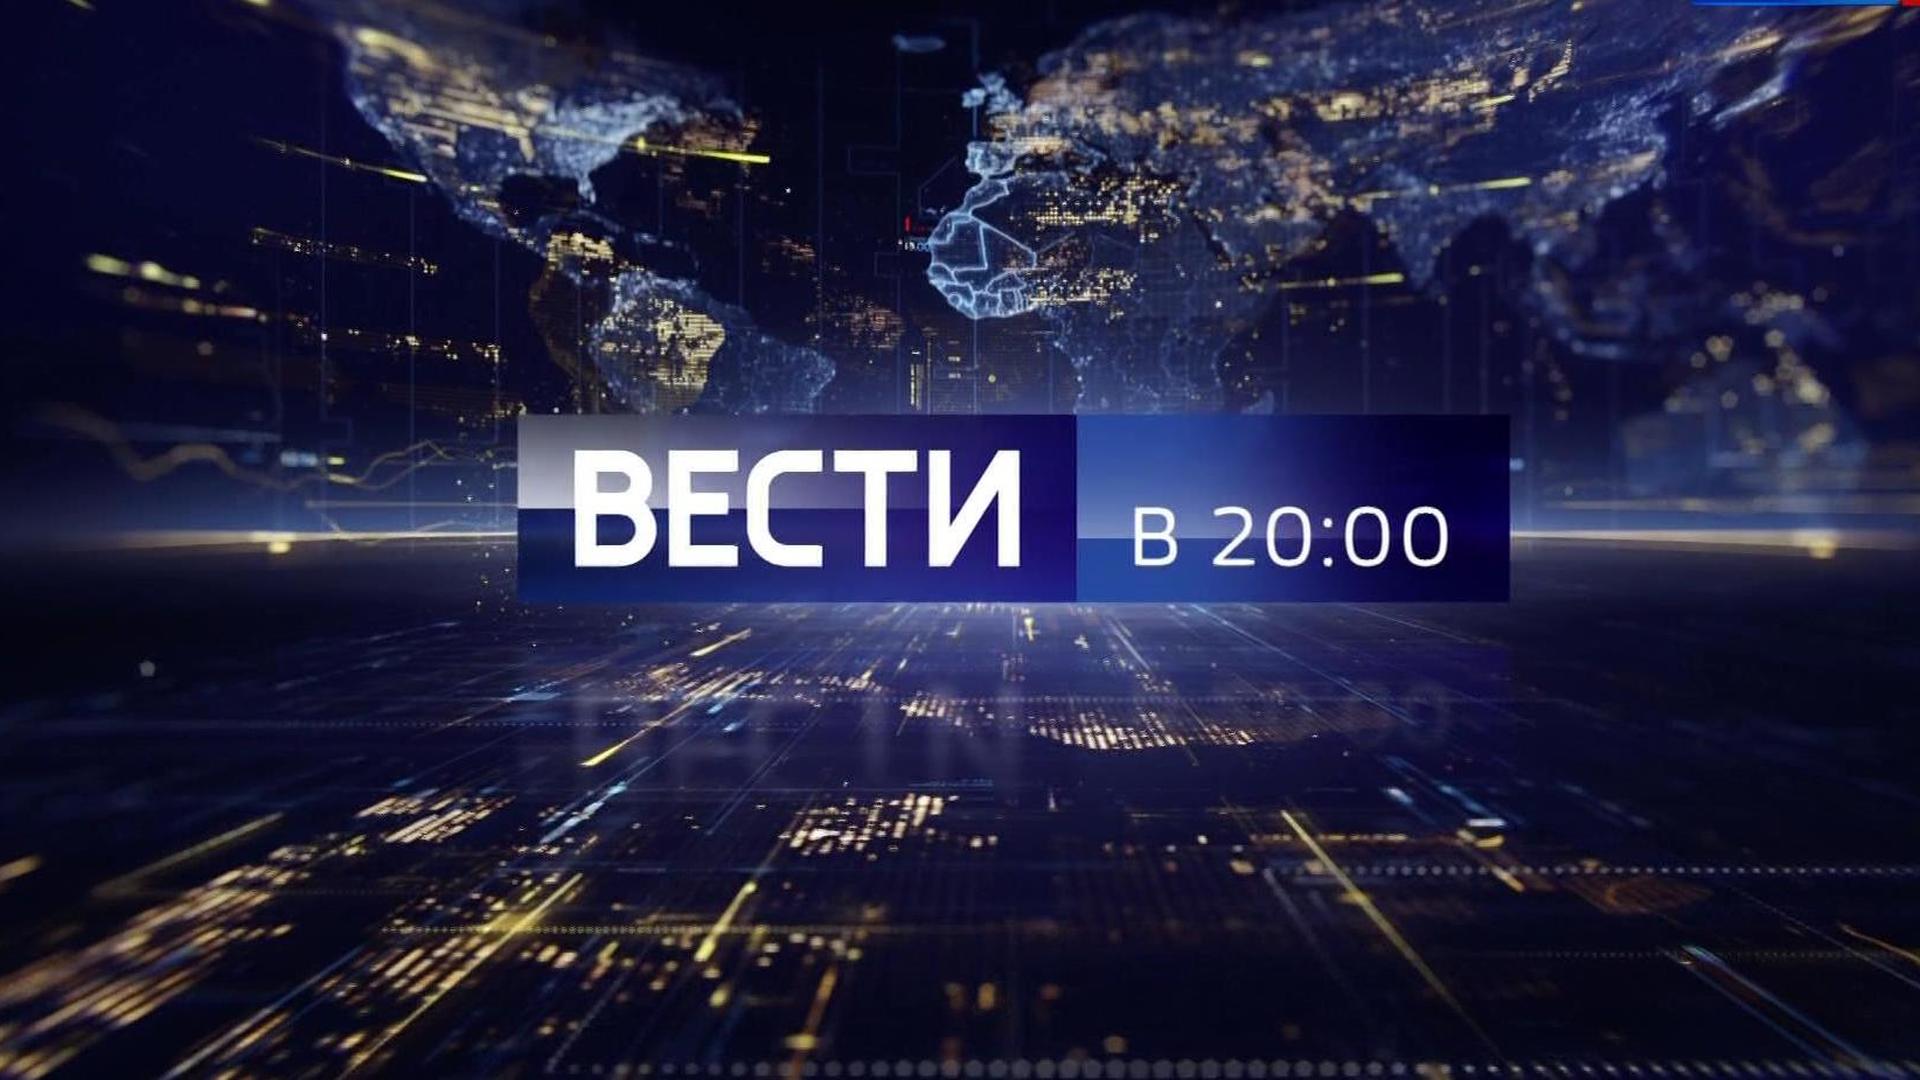 Вести россия прямой эфир сегодня 20 00. Вести в 20 00. Вести Россия 1. Вести заставка. Вести логотип программы.